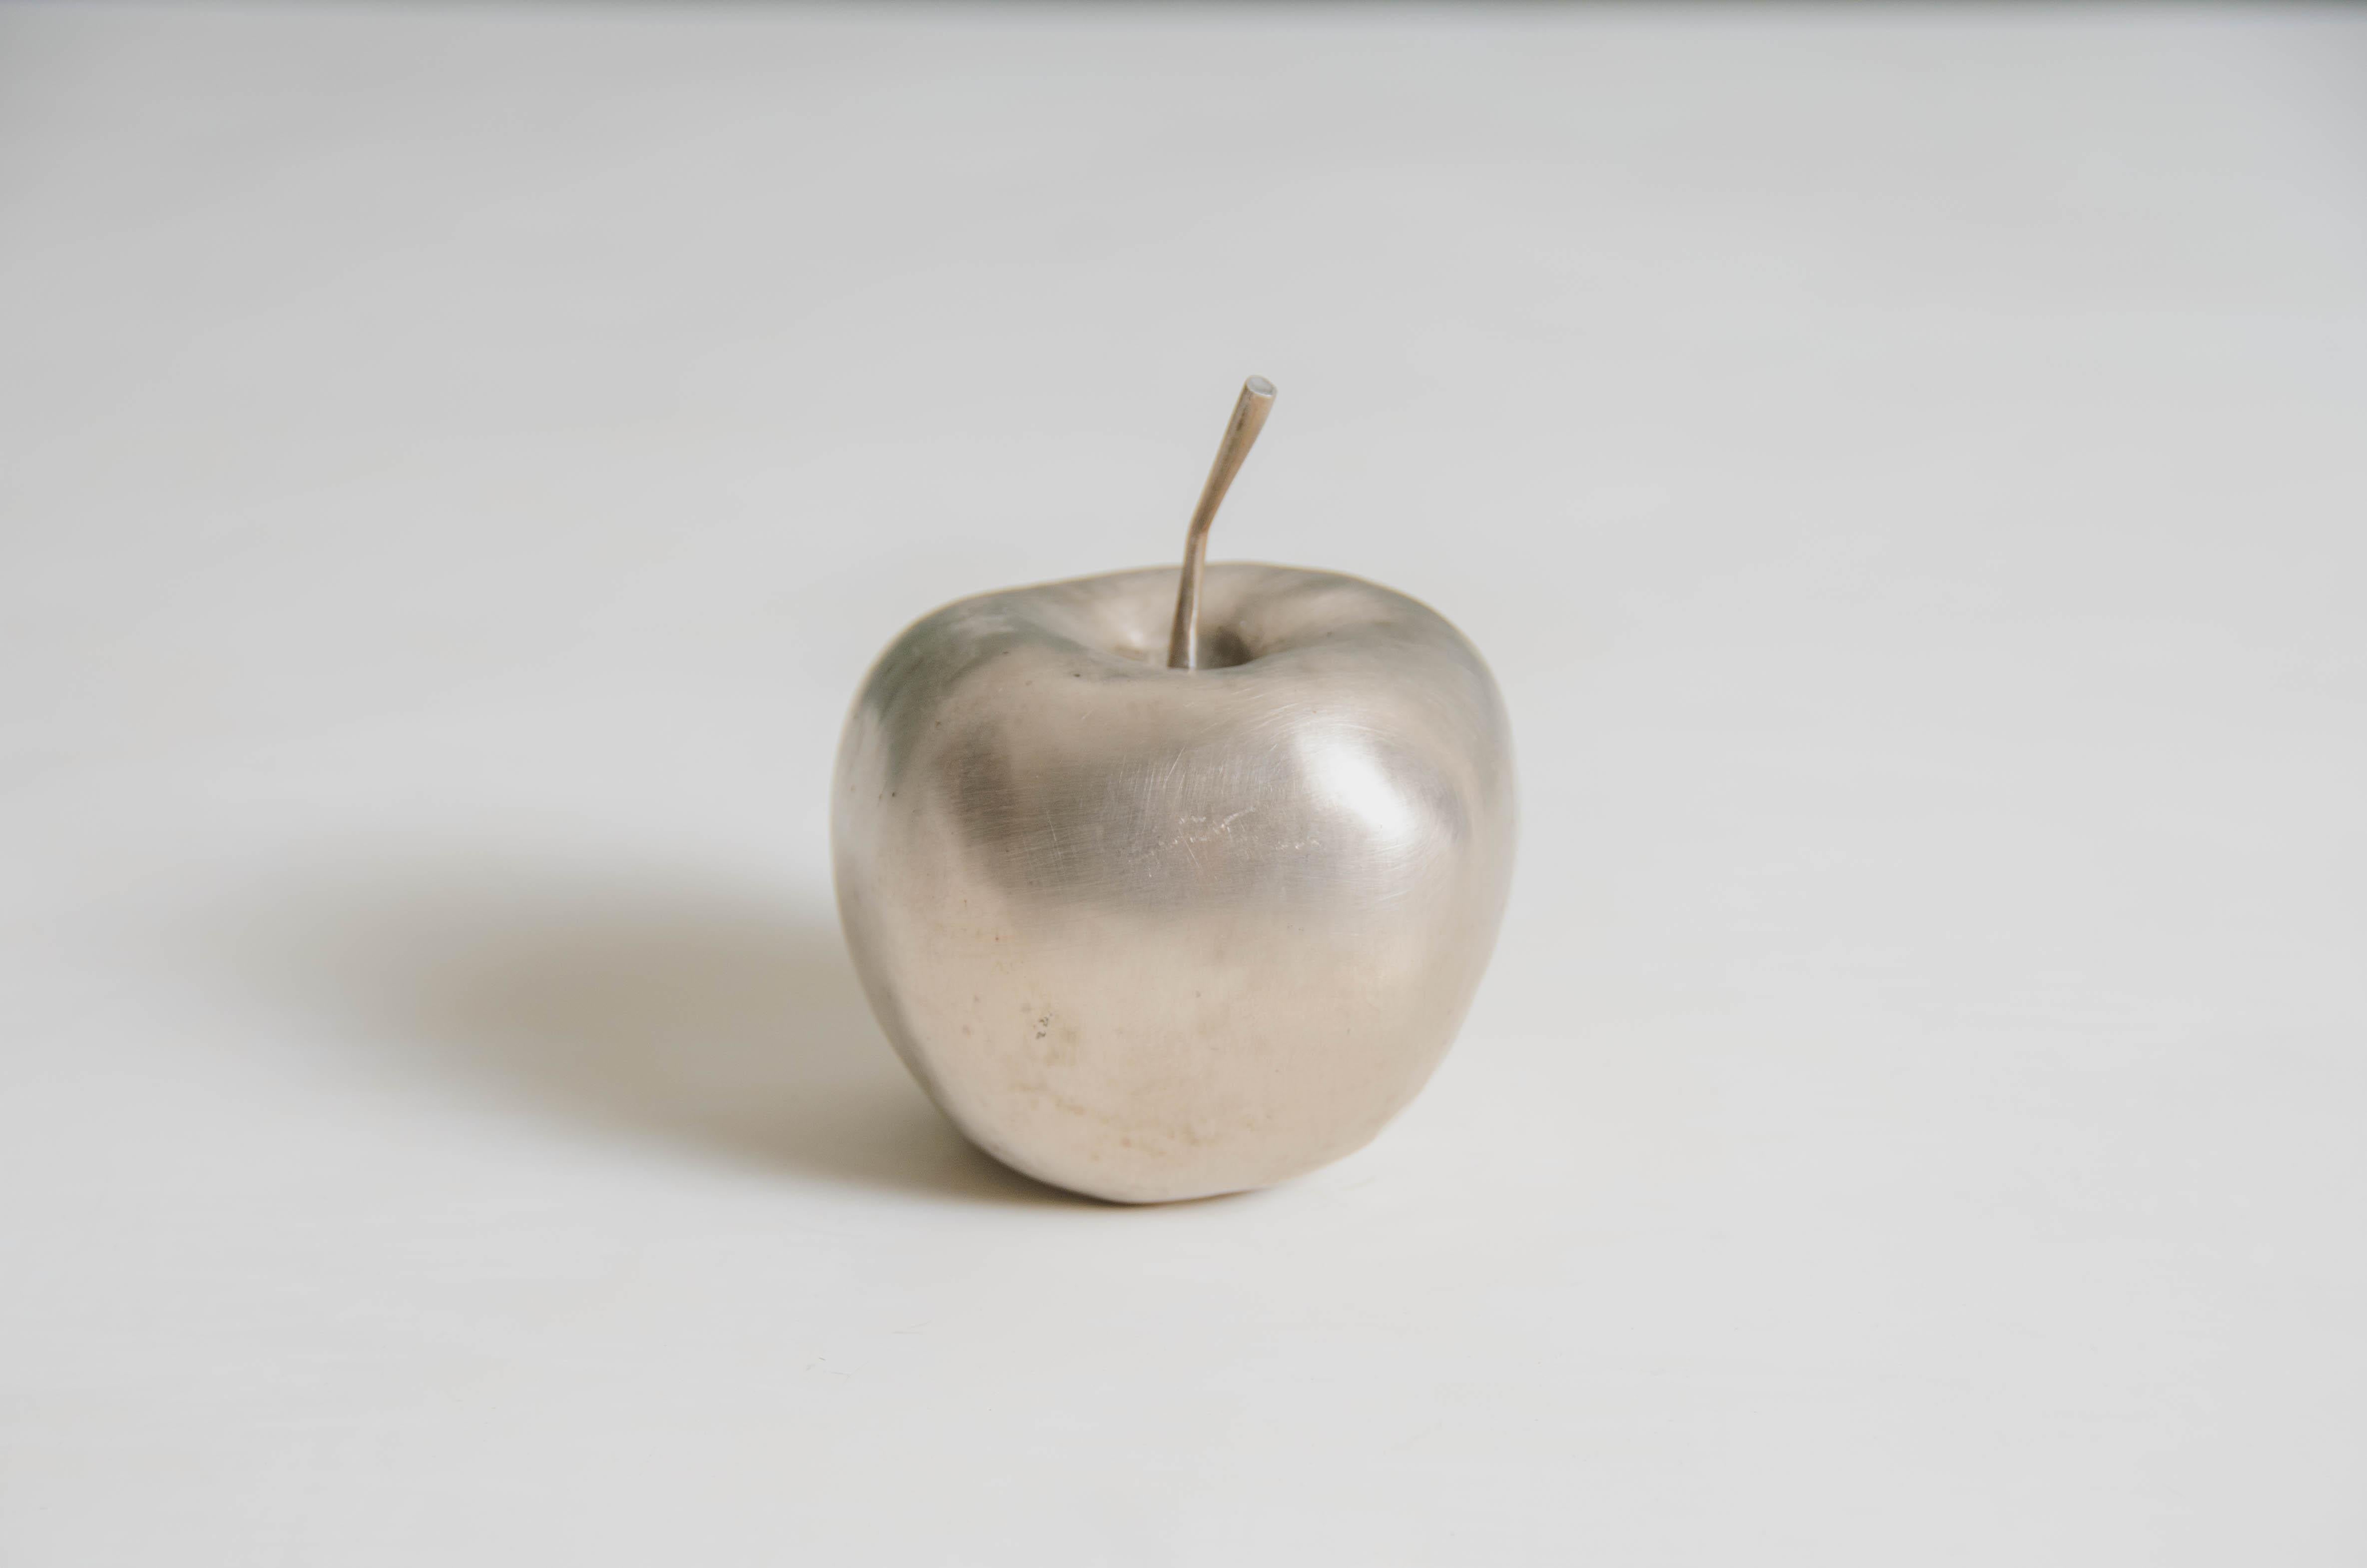 Apfel-Skulptur
Weißbronze
Hand Repoussé
Limitierte Auflage
Jedes Stück wird individuell angefertigt und ist einzigartig. 
Repoussé ist die traditionelle Kunst, ein dekoratives Relief von Hand auf ein Blech zu hämmern. Die Technik entstand um